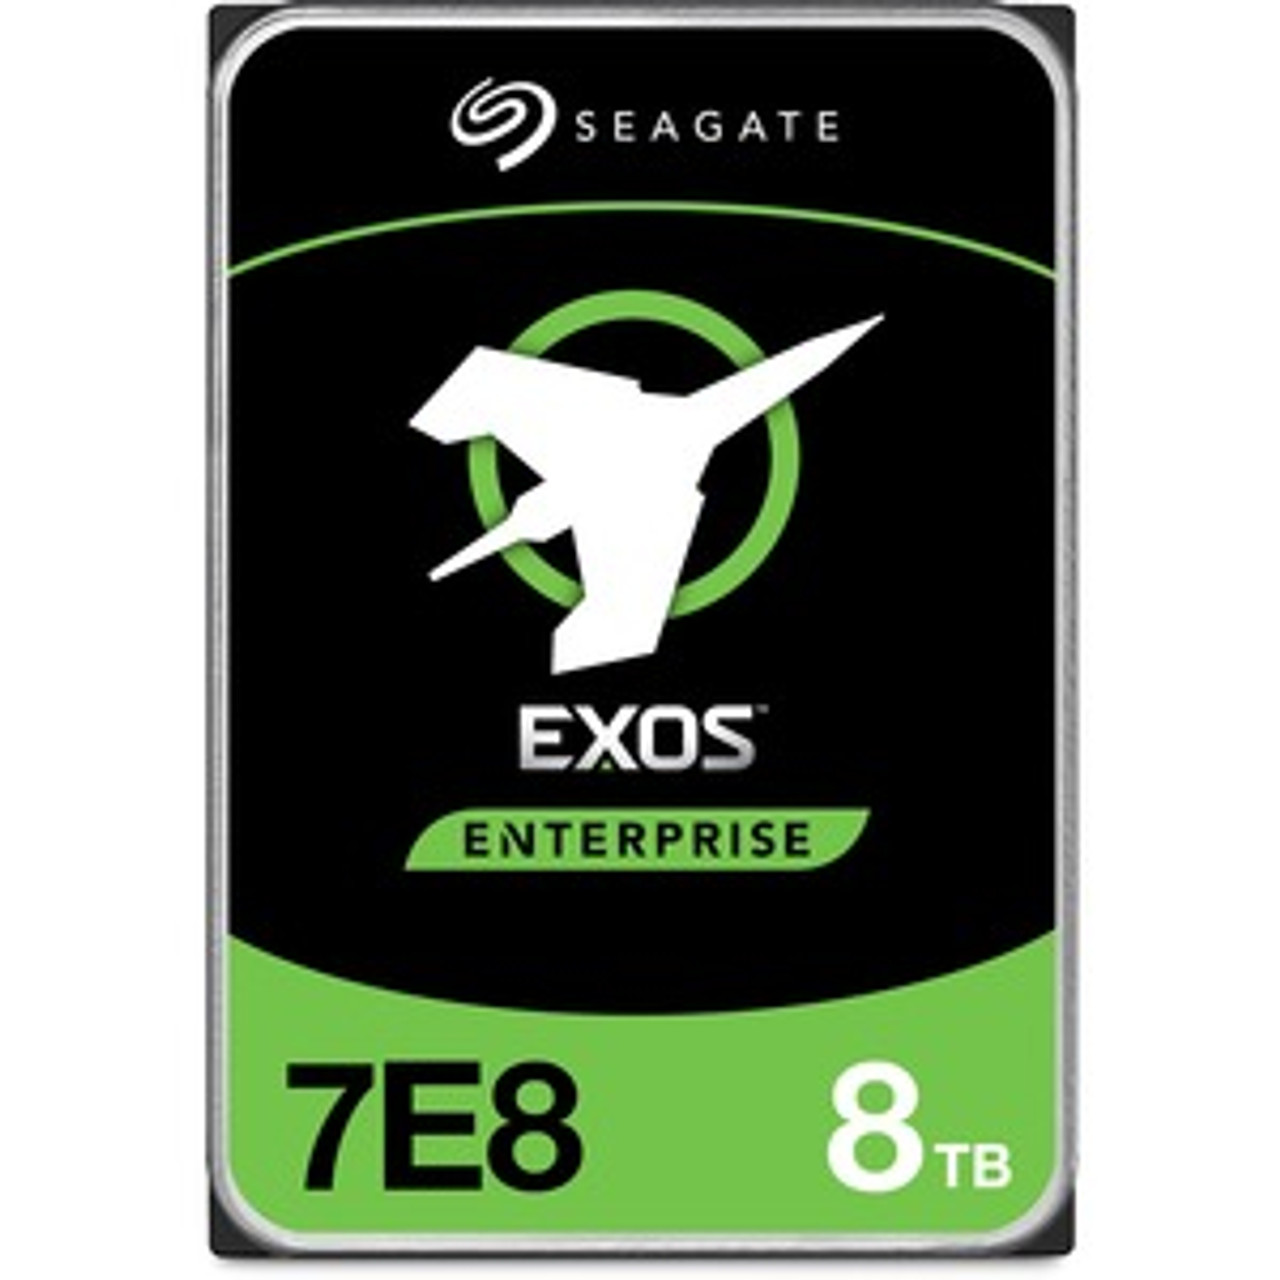 ST8000NM001A-20PK Seagate Exos 7E8 8TB 7200RPM SAS 12Gbps 256MB Cache (512e) 3.5-inch Internal Hard Drive (20-Pack)